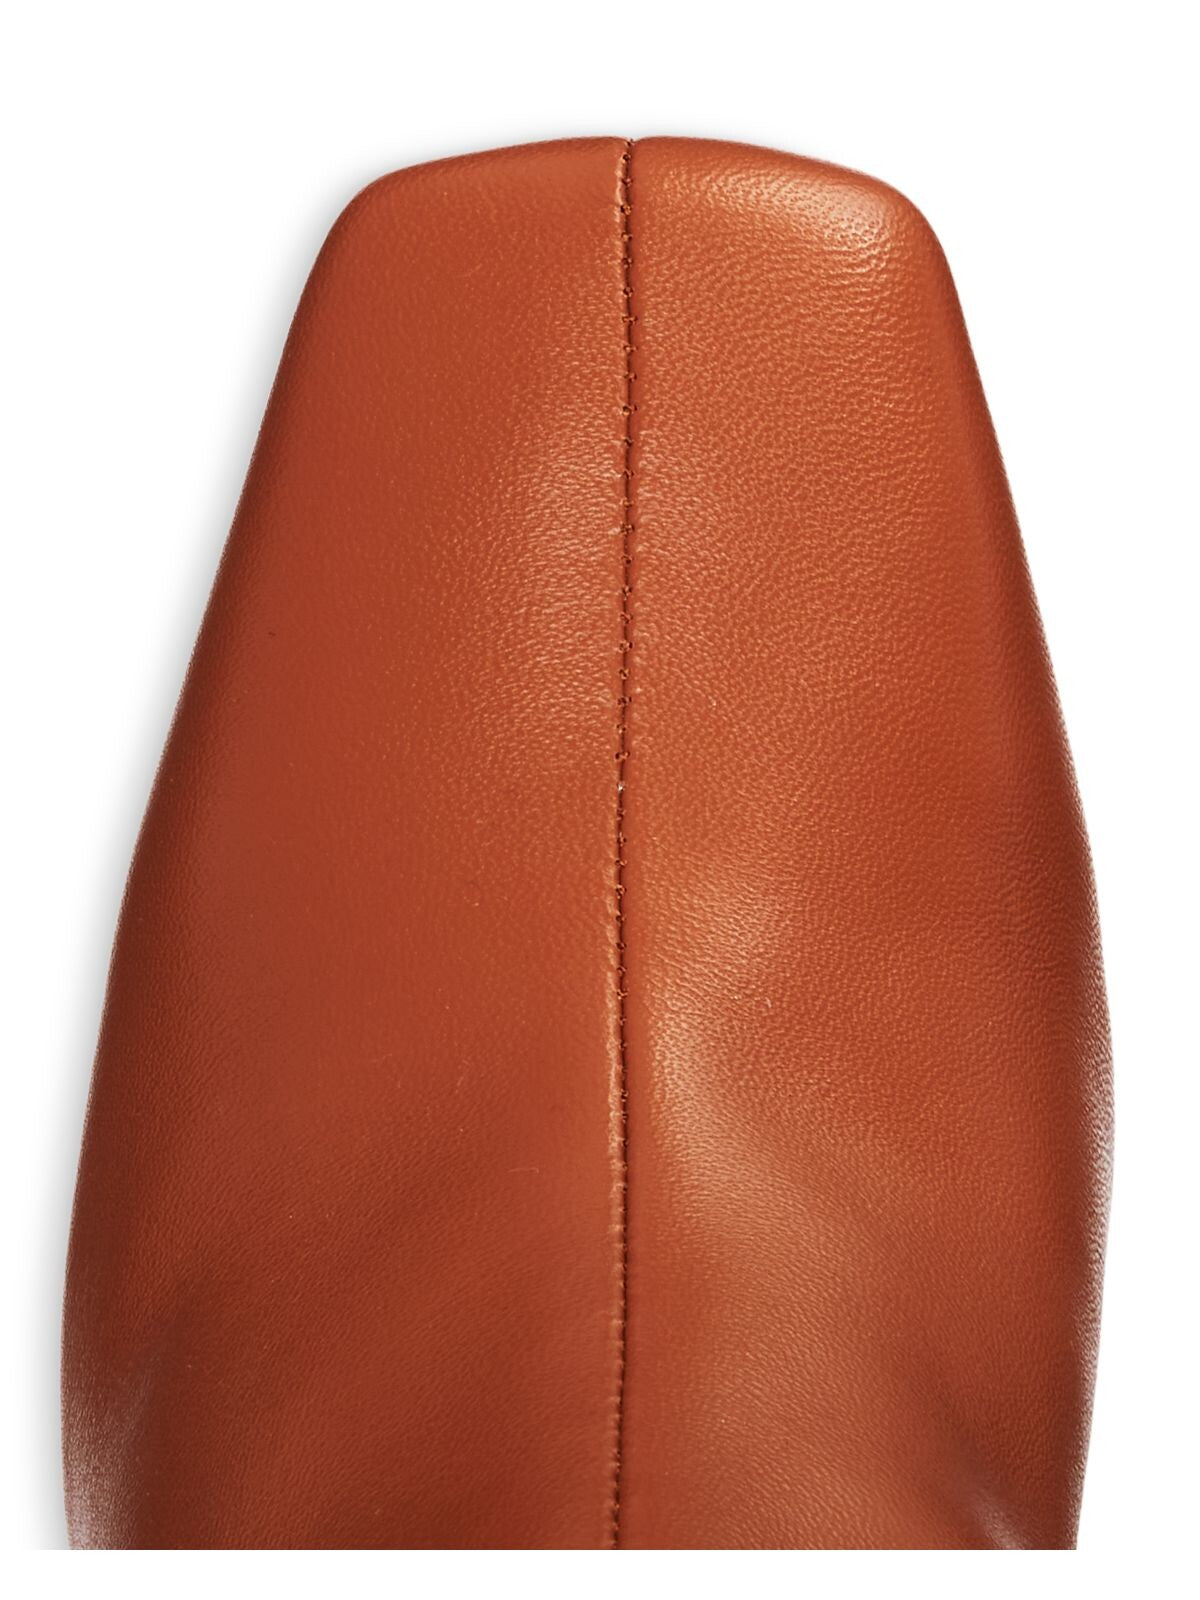 AQUA Womens Brown Comfort Goring Juno Square Toe Block Heel Zip-Up Leather Booties 9.5 M